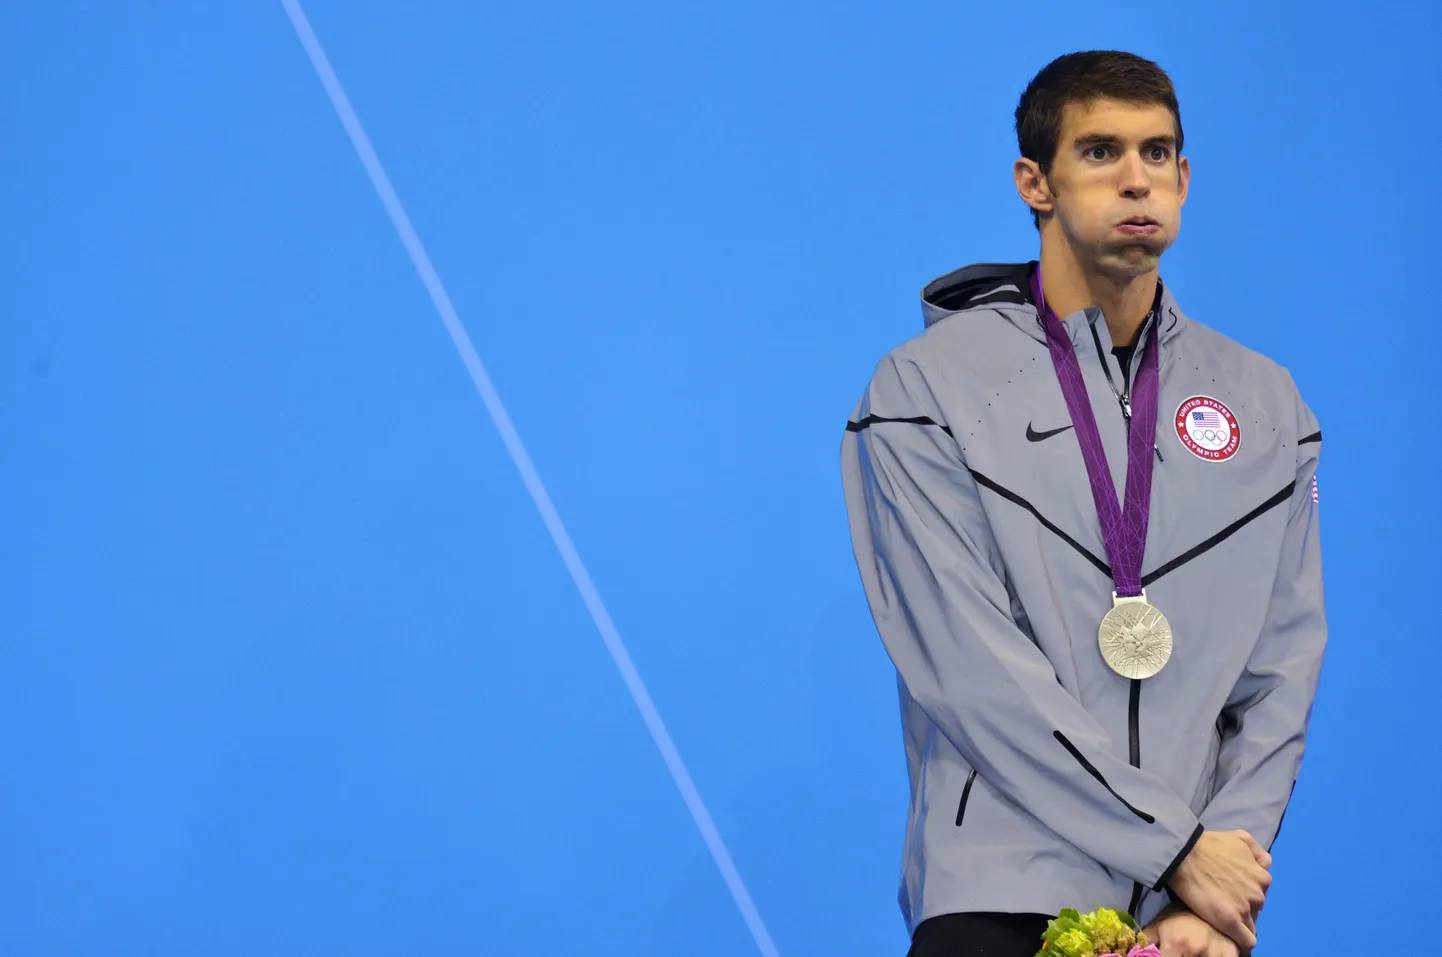 Michael Phelpsi nägu 2012. aasta olümpiamängudel pärast 200 m liblikujumisel saadud hõbemedalit on kõike muud kui rõõmus.